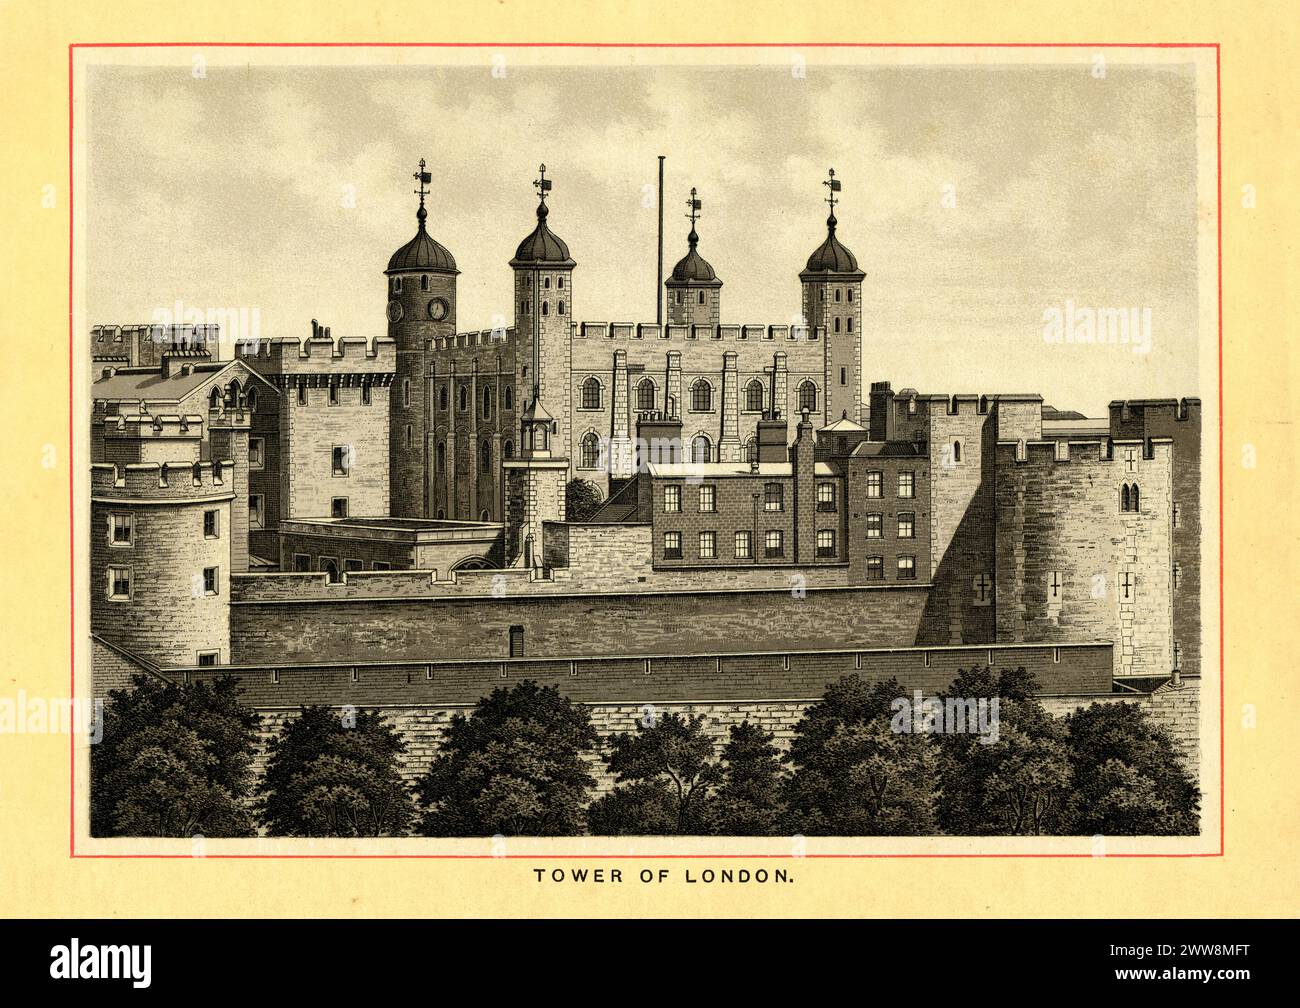 Vintage-Stich des Tower of London, London, England im Jahr 1895. Eine historische Burg am Nordufer der Themse im Zentrum von London. Sie wurde Ende 1066 im Rahmen der normannischen Eroberung Englands gegründet. Der Weiße Turm, der der gesamten Burg ihren Namen gibt, wurde 1078 von Wilhelm dem Eroberer erbaut. Stockfoto